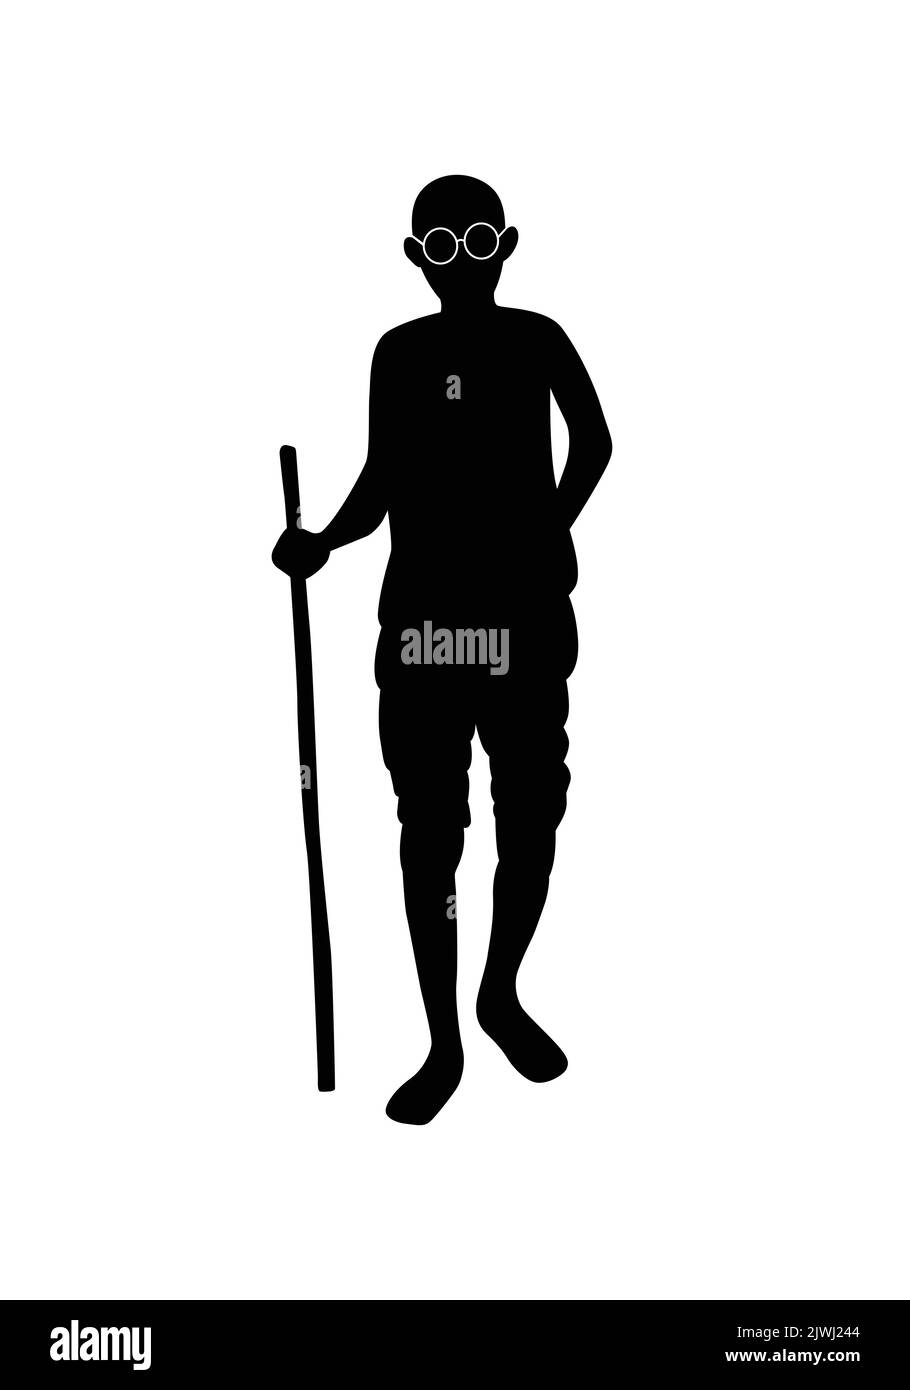 Happy Gandhi Jayanti grafische Ressource mit Spazierstock Brille oder Brille Vektor Illustration. Gandhi Ji Standing Silhouette. Dandi oder salzmarsch Stock Vektor